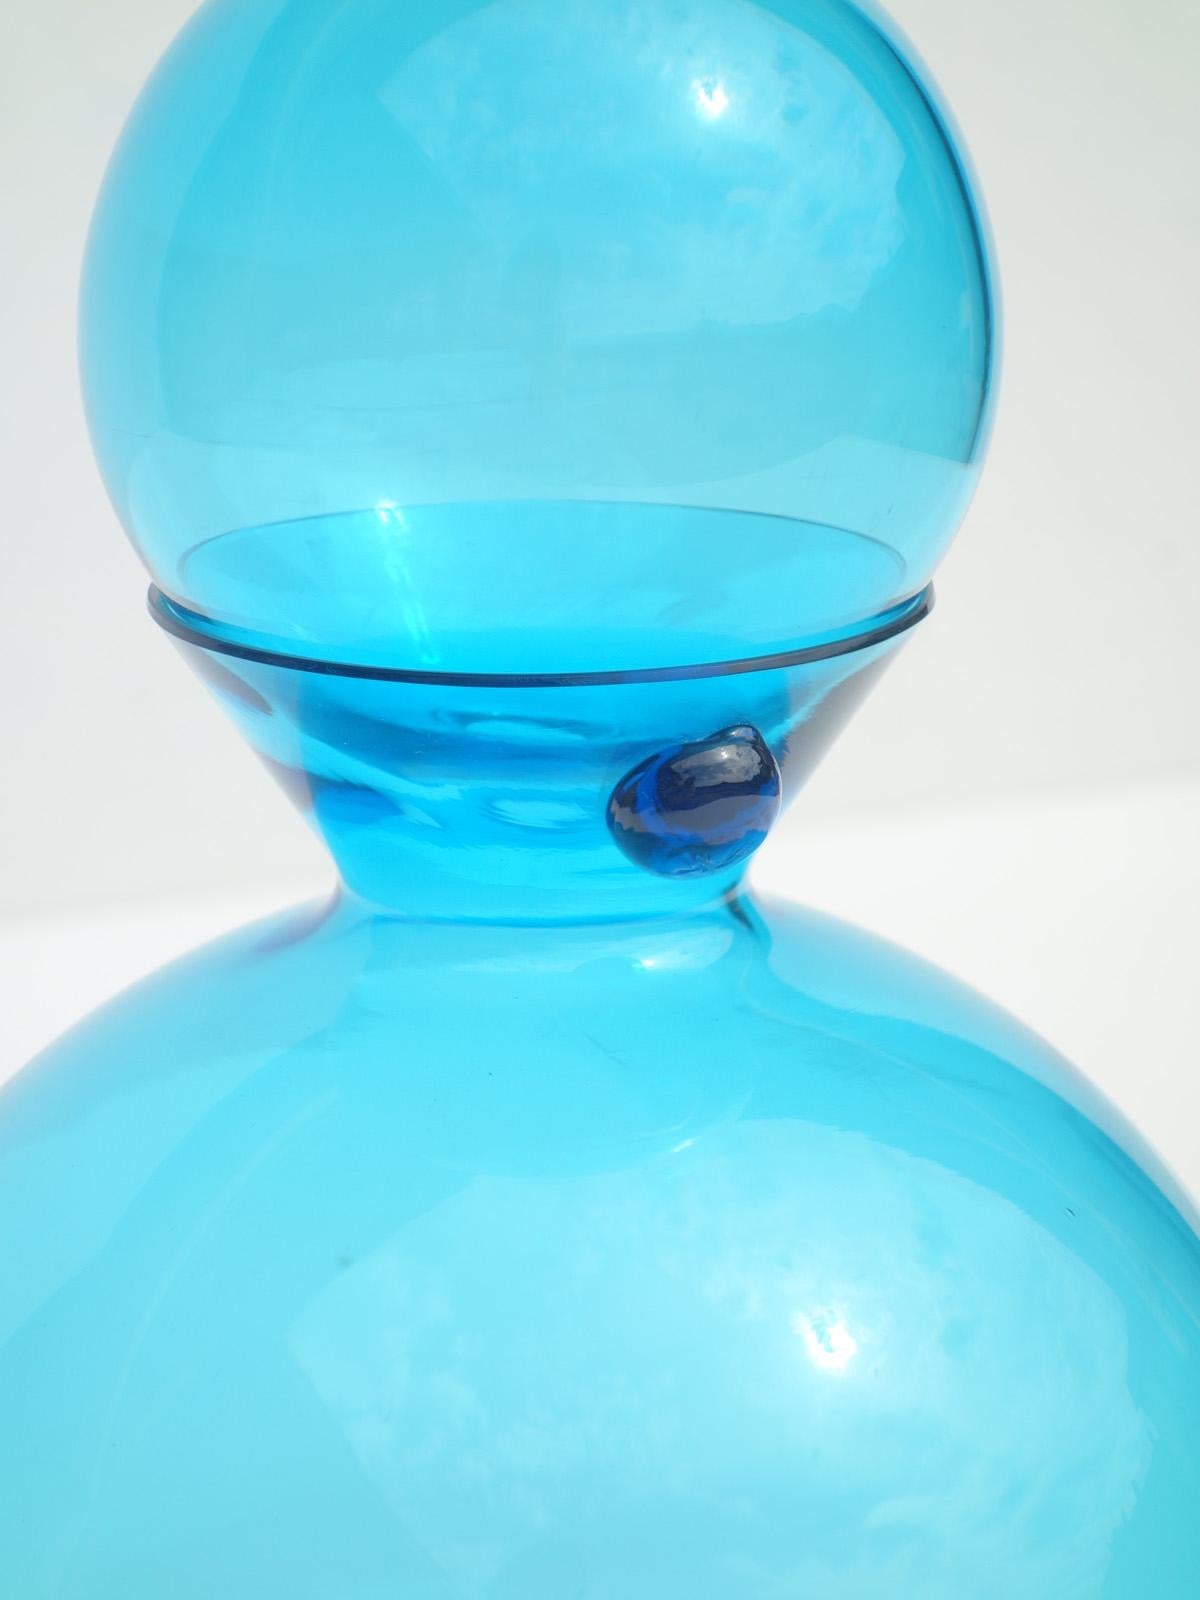 Blue blown glass bottle
Perfect condiction

MEASURES:
H 32 cm
diam 18.5 cm

